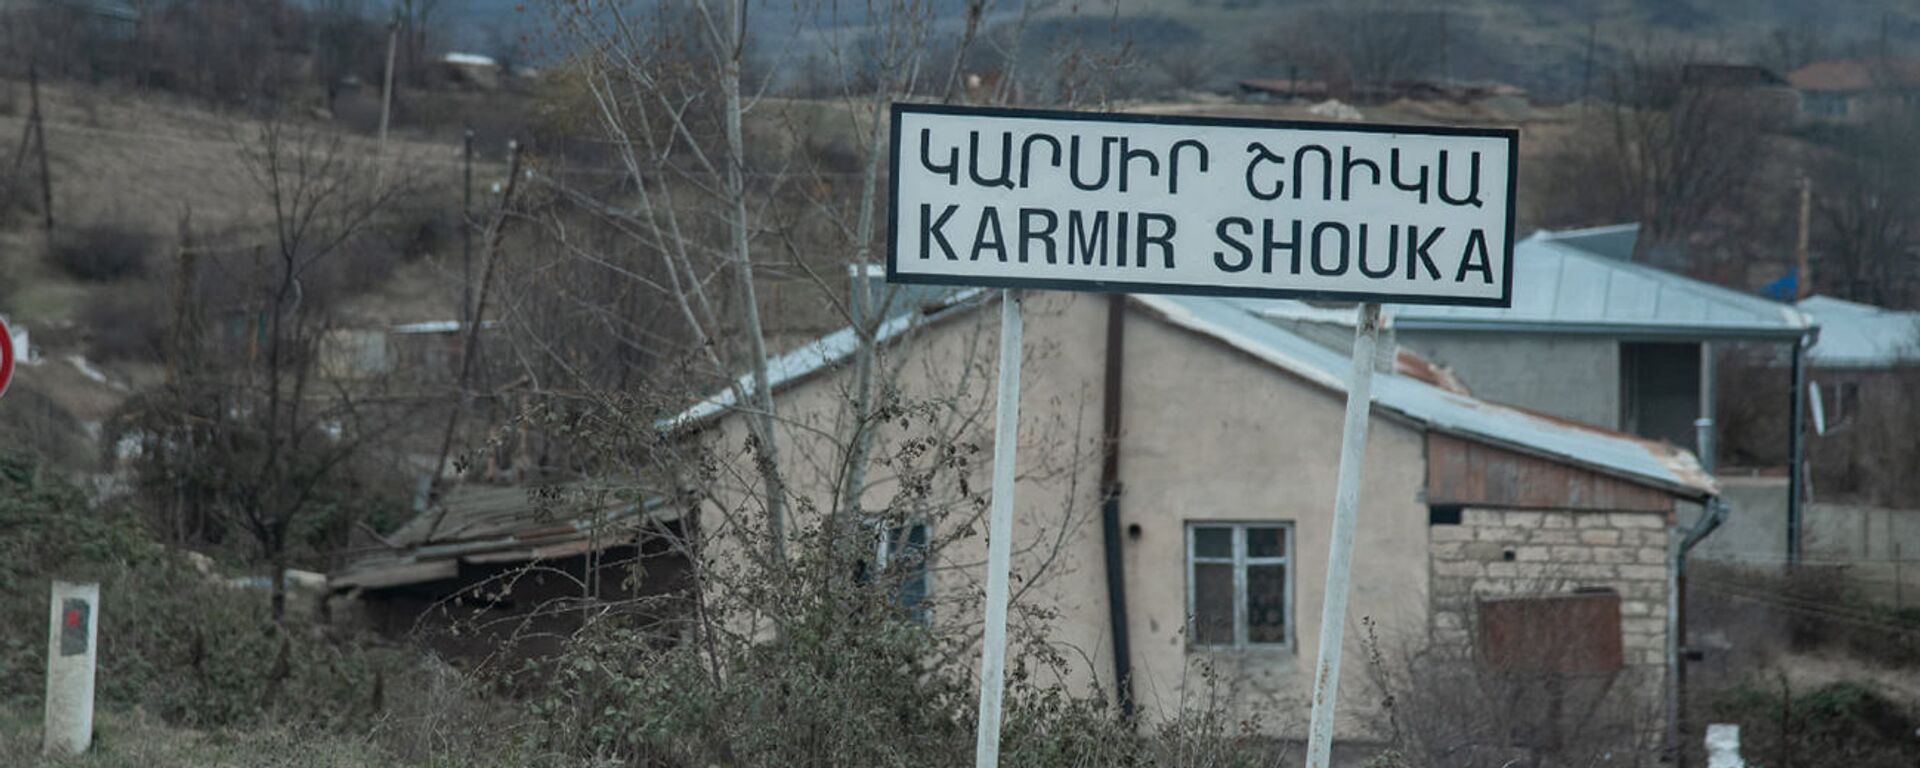 Село Кармир Шука в Карабахе - Sputnik Արմենիա, 1920, 04.12.2021